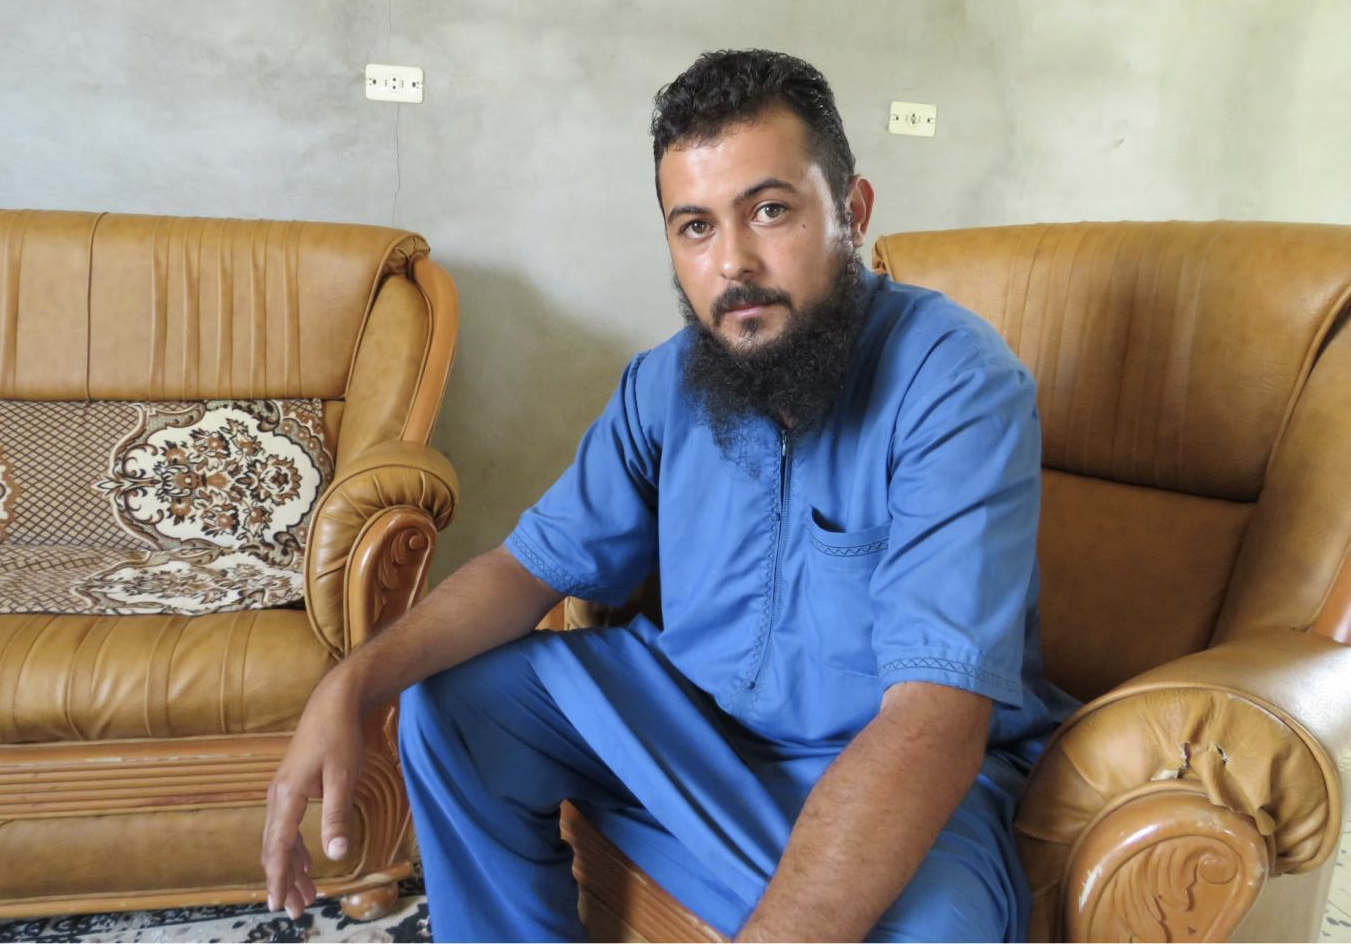 Mohammed Abu Ajila Enbis dans la maison dont il avait été chassé, à Espiaa, fin 2019 (MEE/Daniel Hilton)